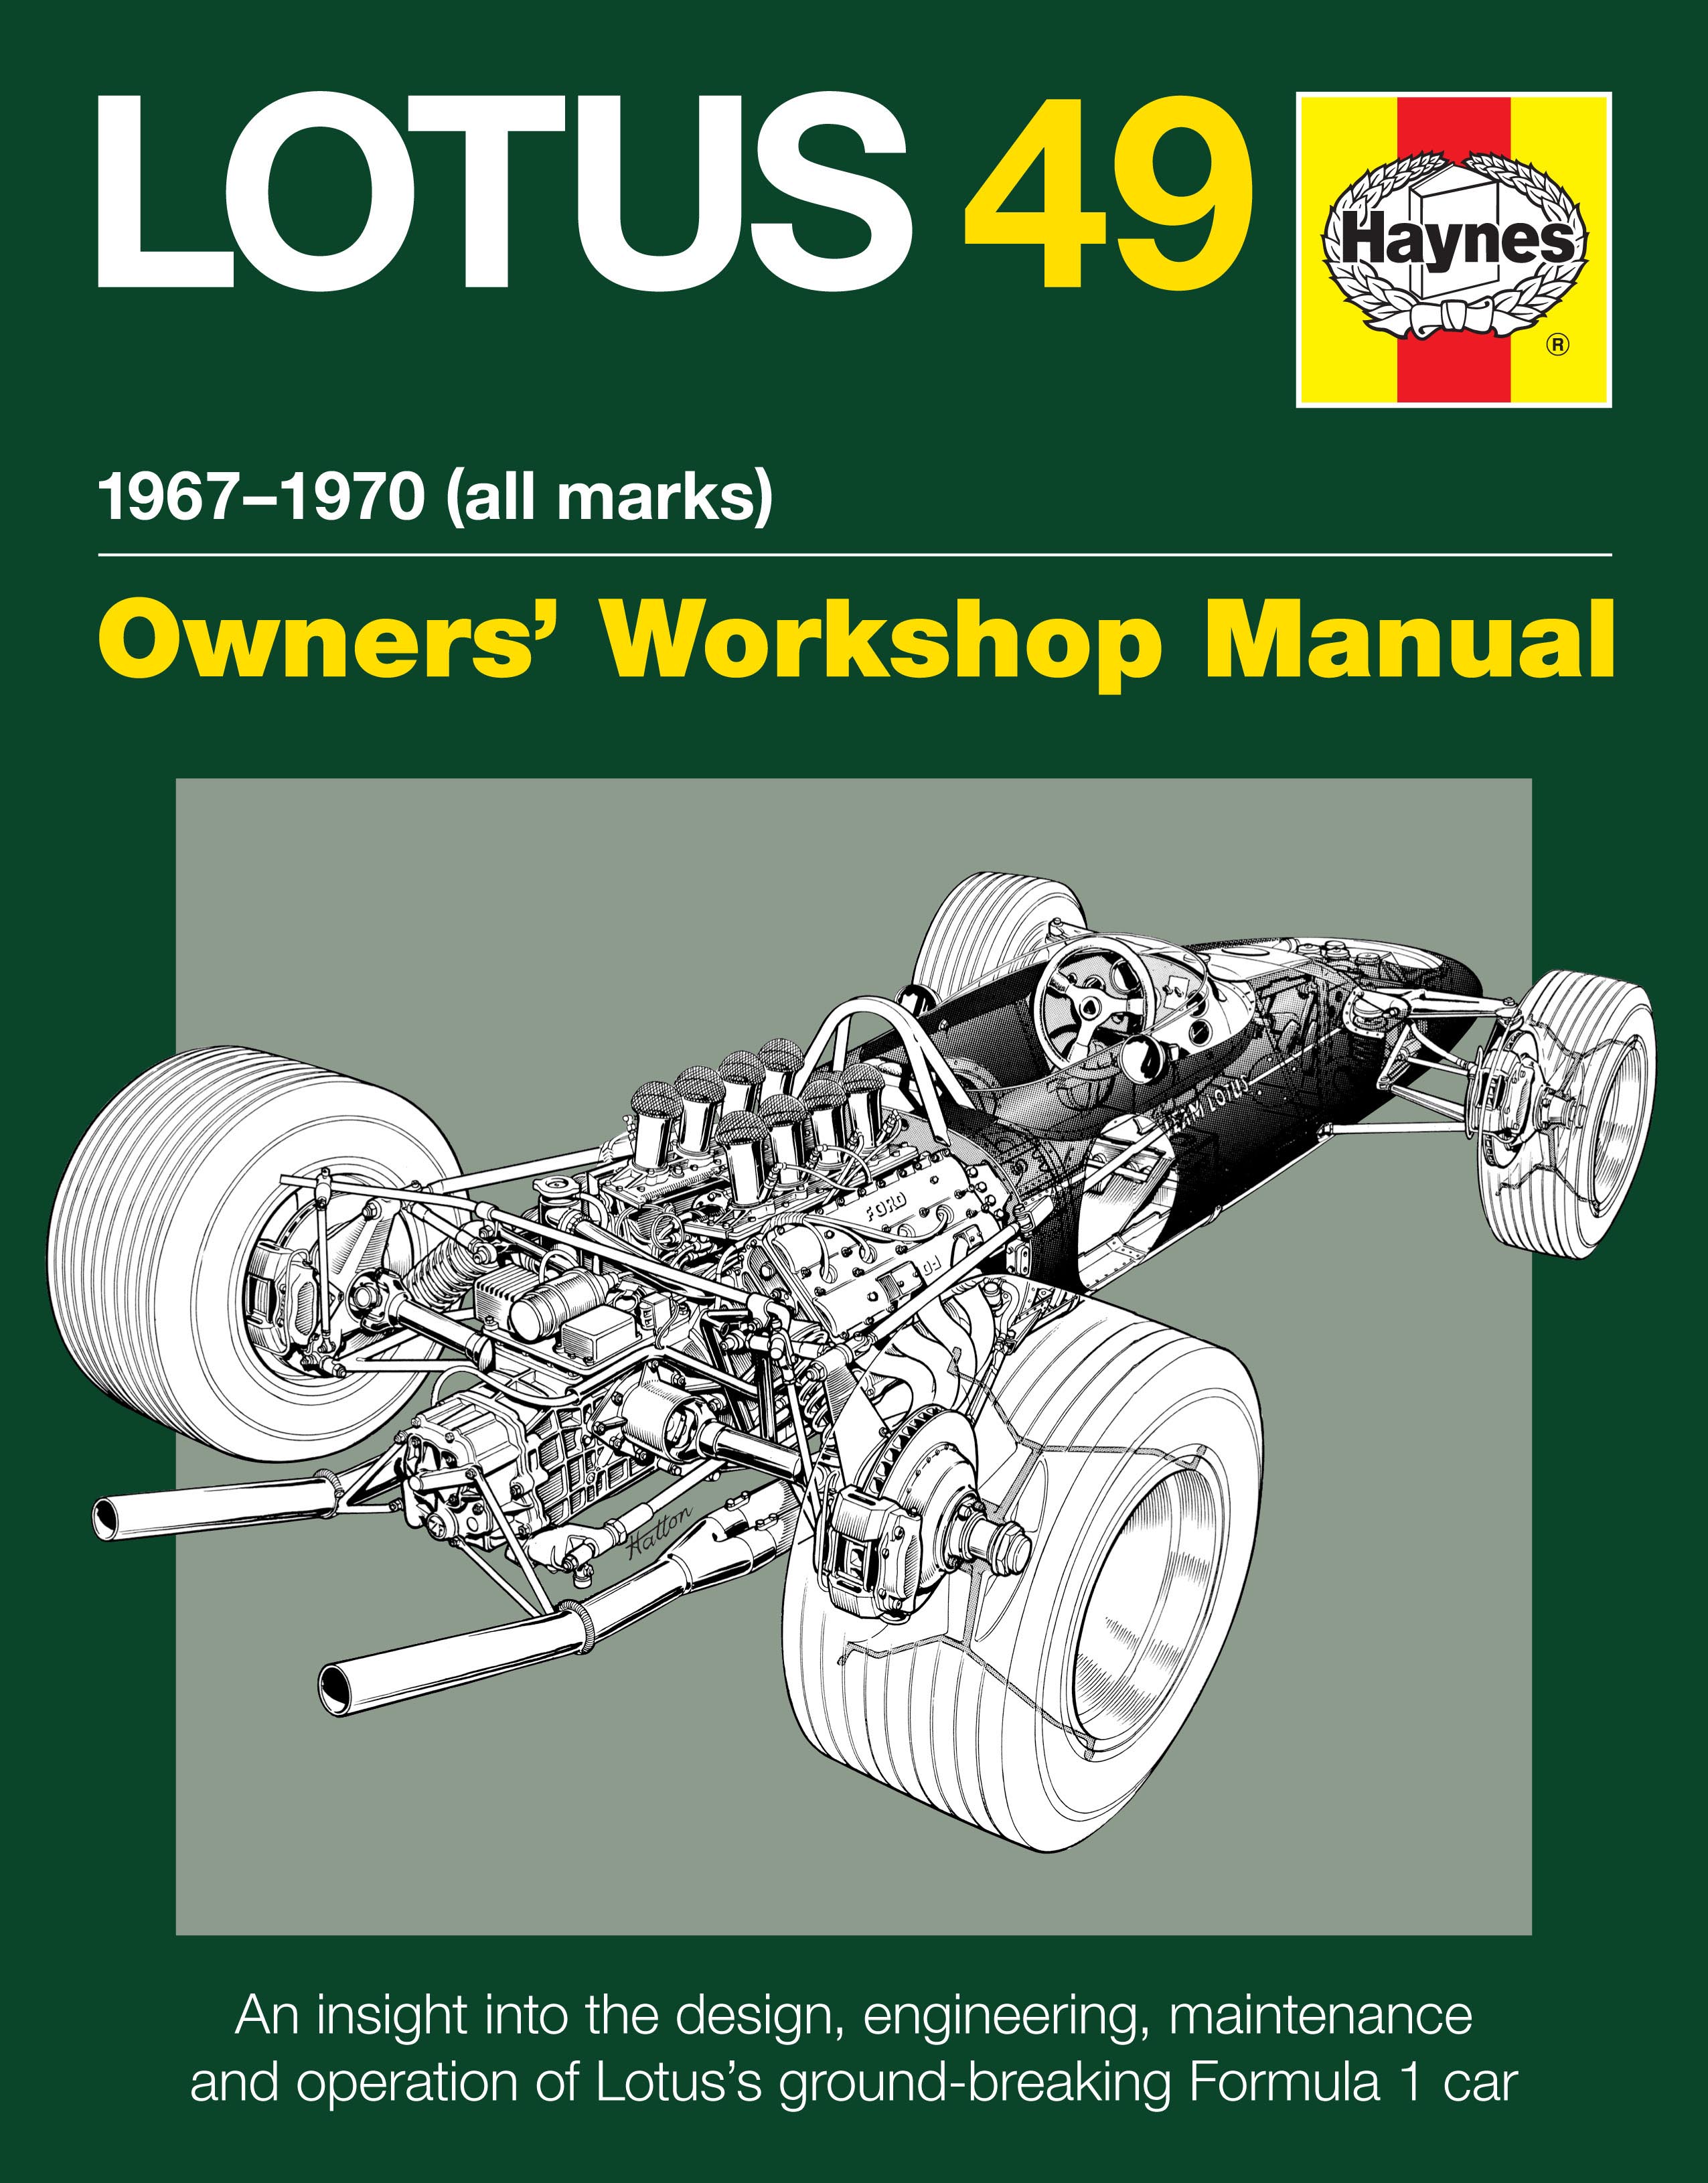 Lotus 49 Owners Manual 1967-1970